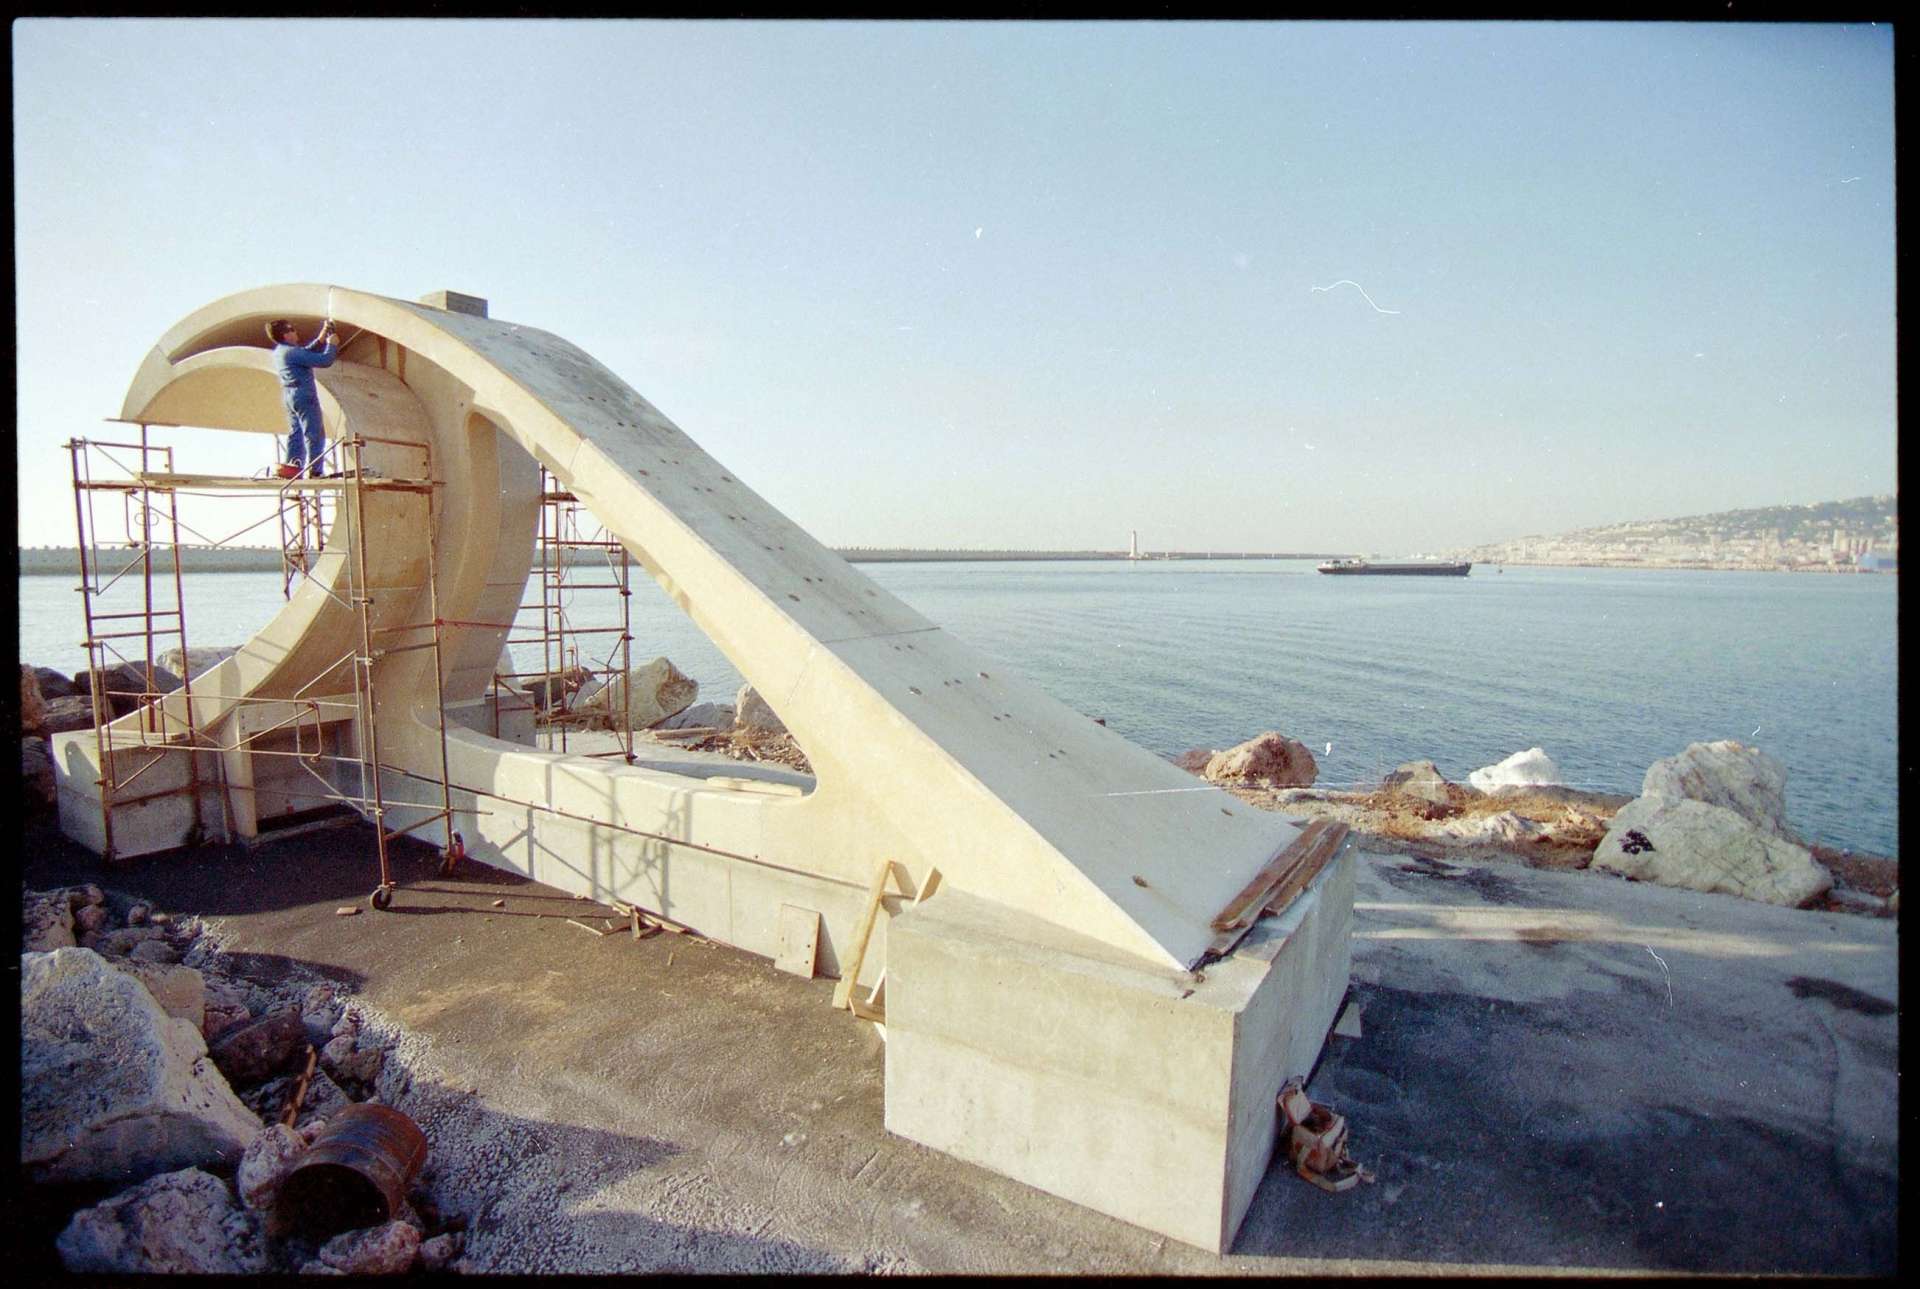 Construction du phare de la digue Est, port de Sète, Hérault, 1994
Photographie issue de la photothèque du Service maritime et de navigation du Languedoc-Roussillon, cliché Christian Lavit.